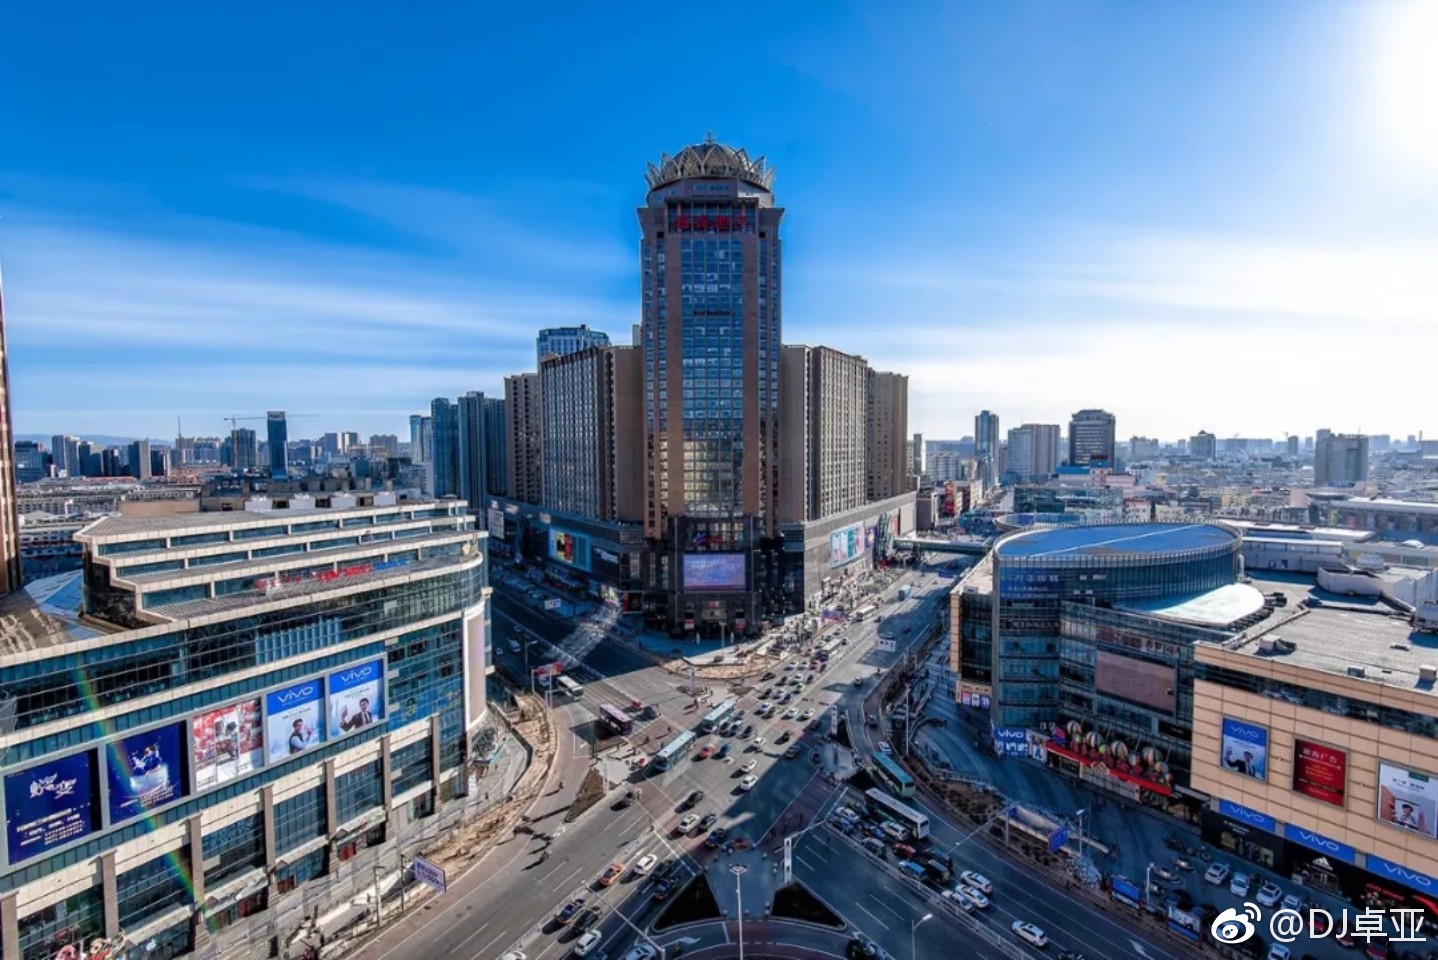 中国十大幸福城市出炉:呼和浩特上榜,因为